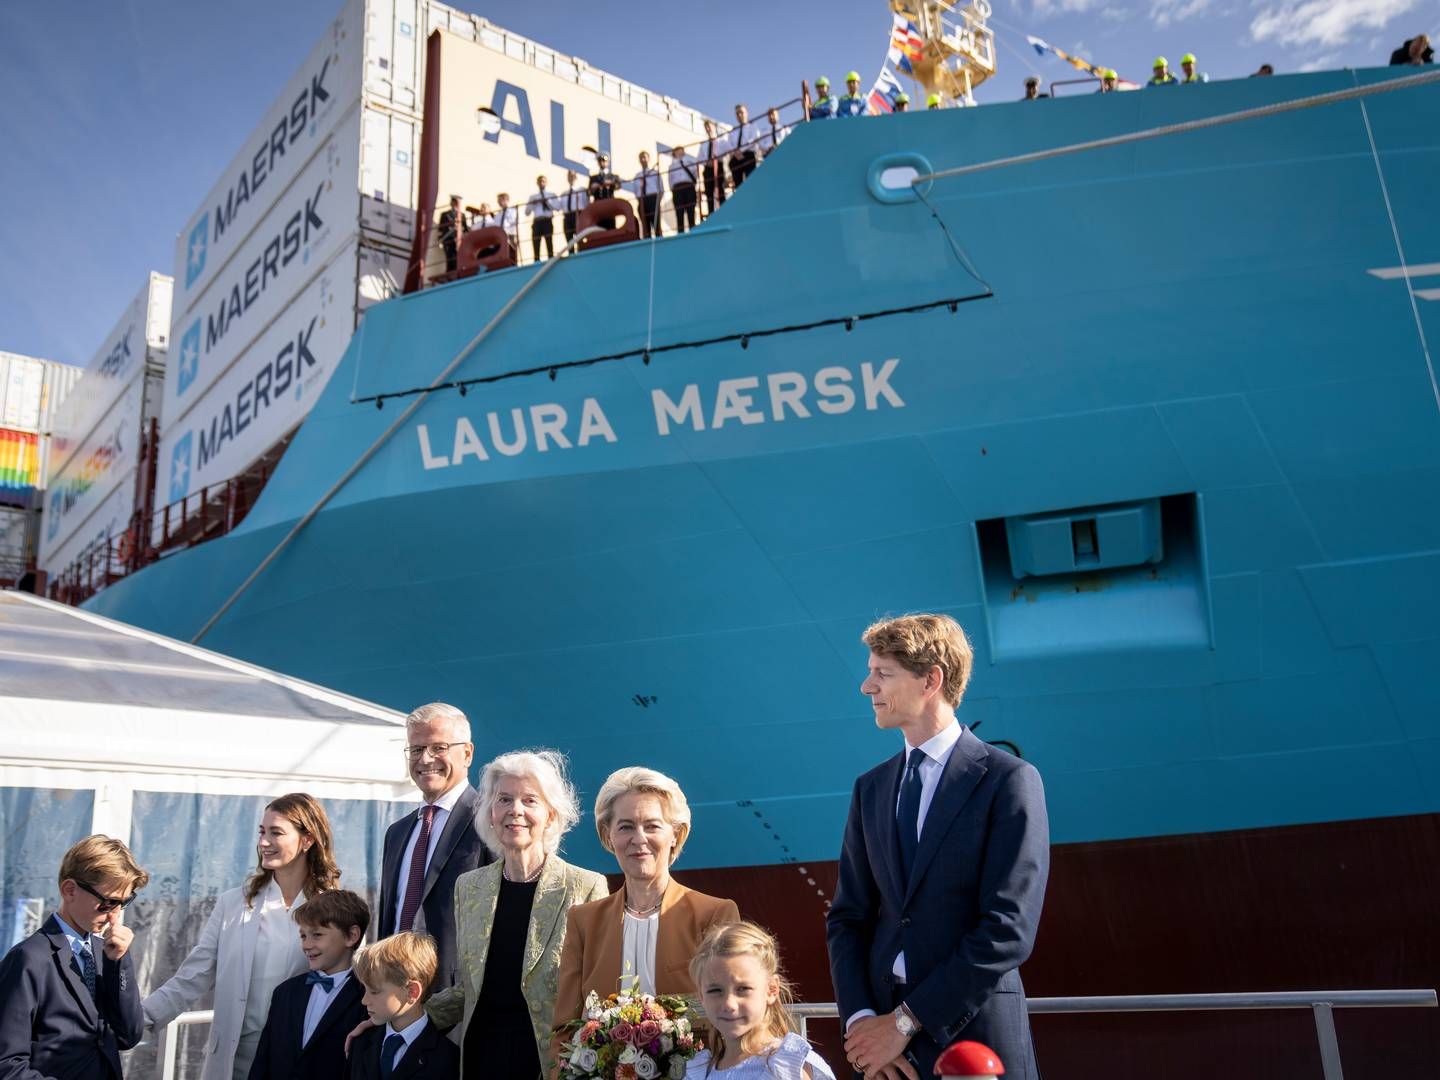 Forrige tirsdag blev Mærsks første containerskib, der sejler på metanol, navngivet. Det kræver dog, at den biogene CO2 bliver anvendt og ikke kun lagret, hvis mange flere skal følge trop, pointerer Dansk Erhverv. | Photo: Mads Claus Rasmussen